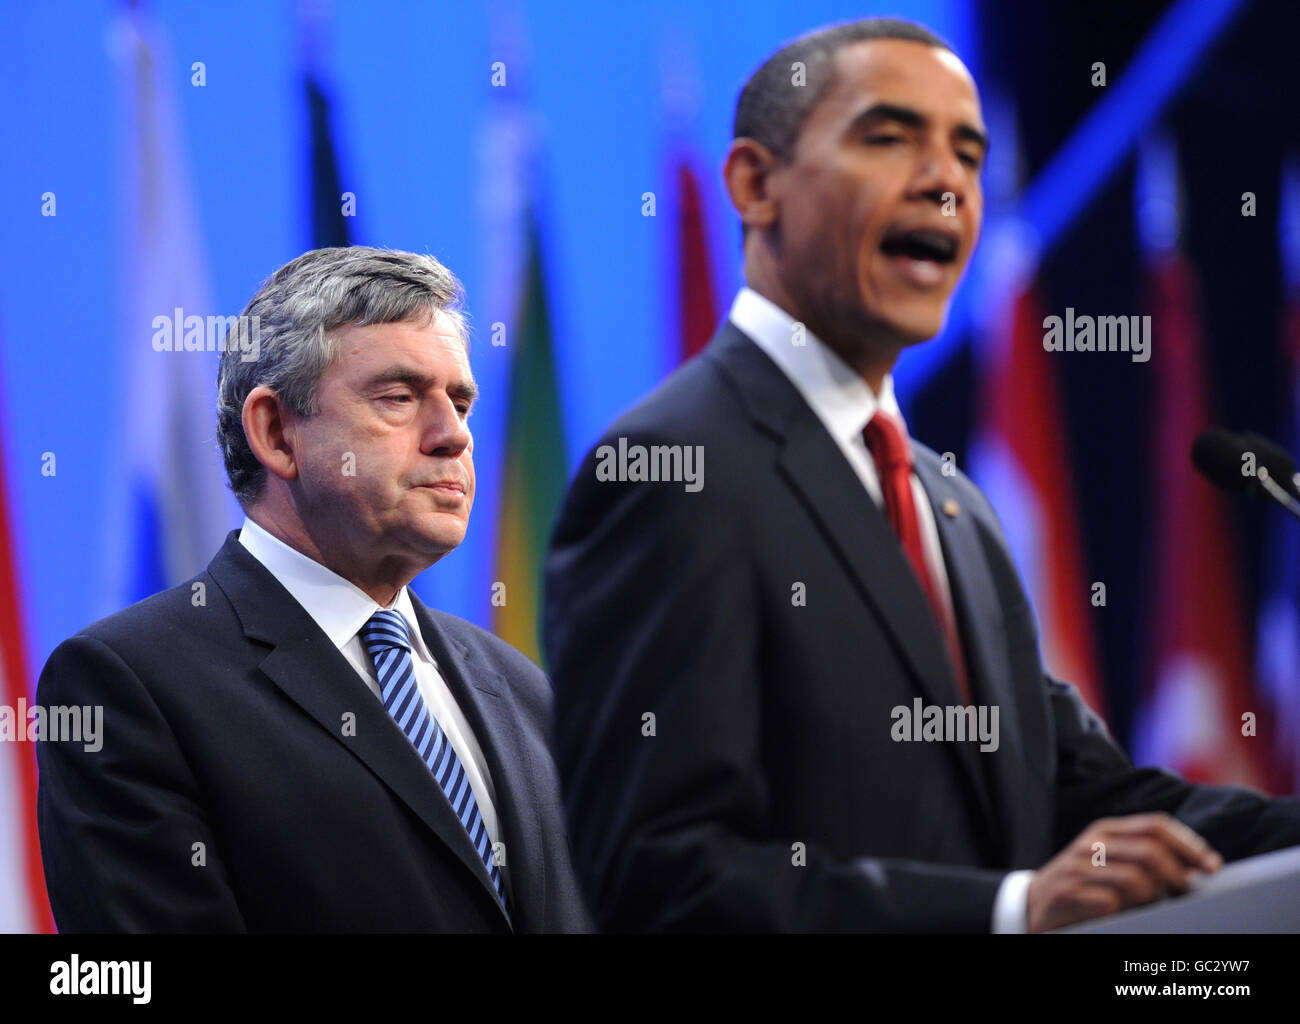 Il primo ministro britannico Gordon Brown e il presidente degli Stati Uniti Barack Obama hanno fatto oggi una dichiarazione al vertice del G20 a Pittsburgh sulla nuova intelligence sulle capacità nucleari dell'Iran. Foto Stock